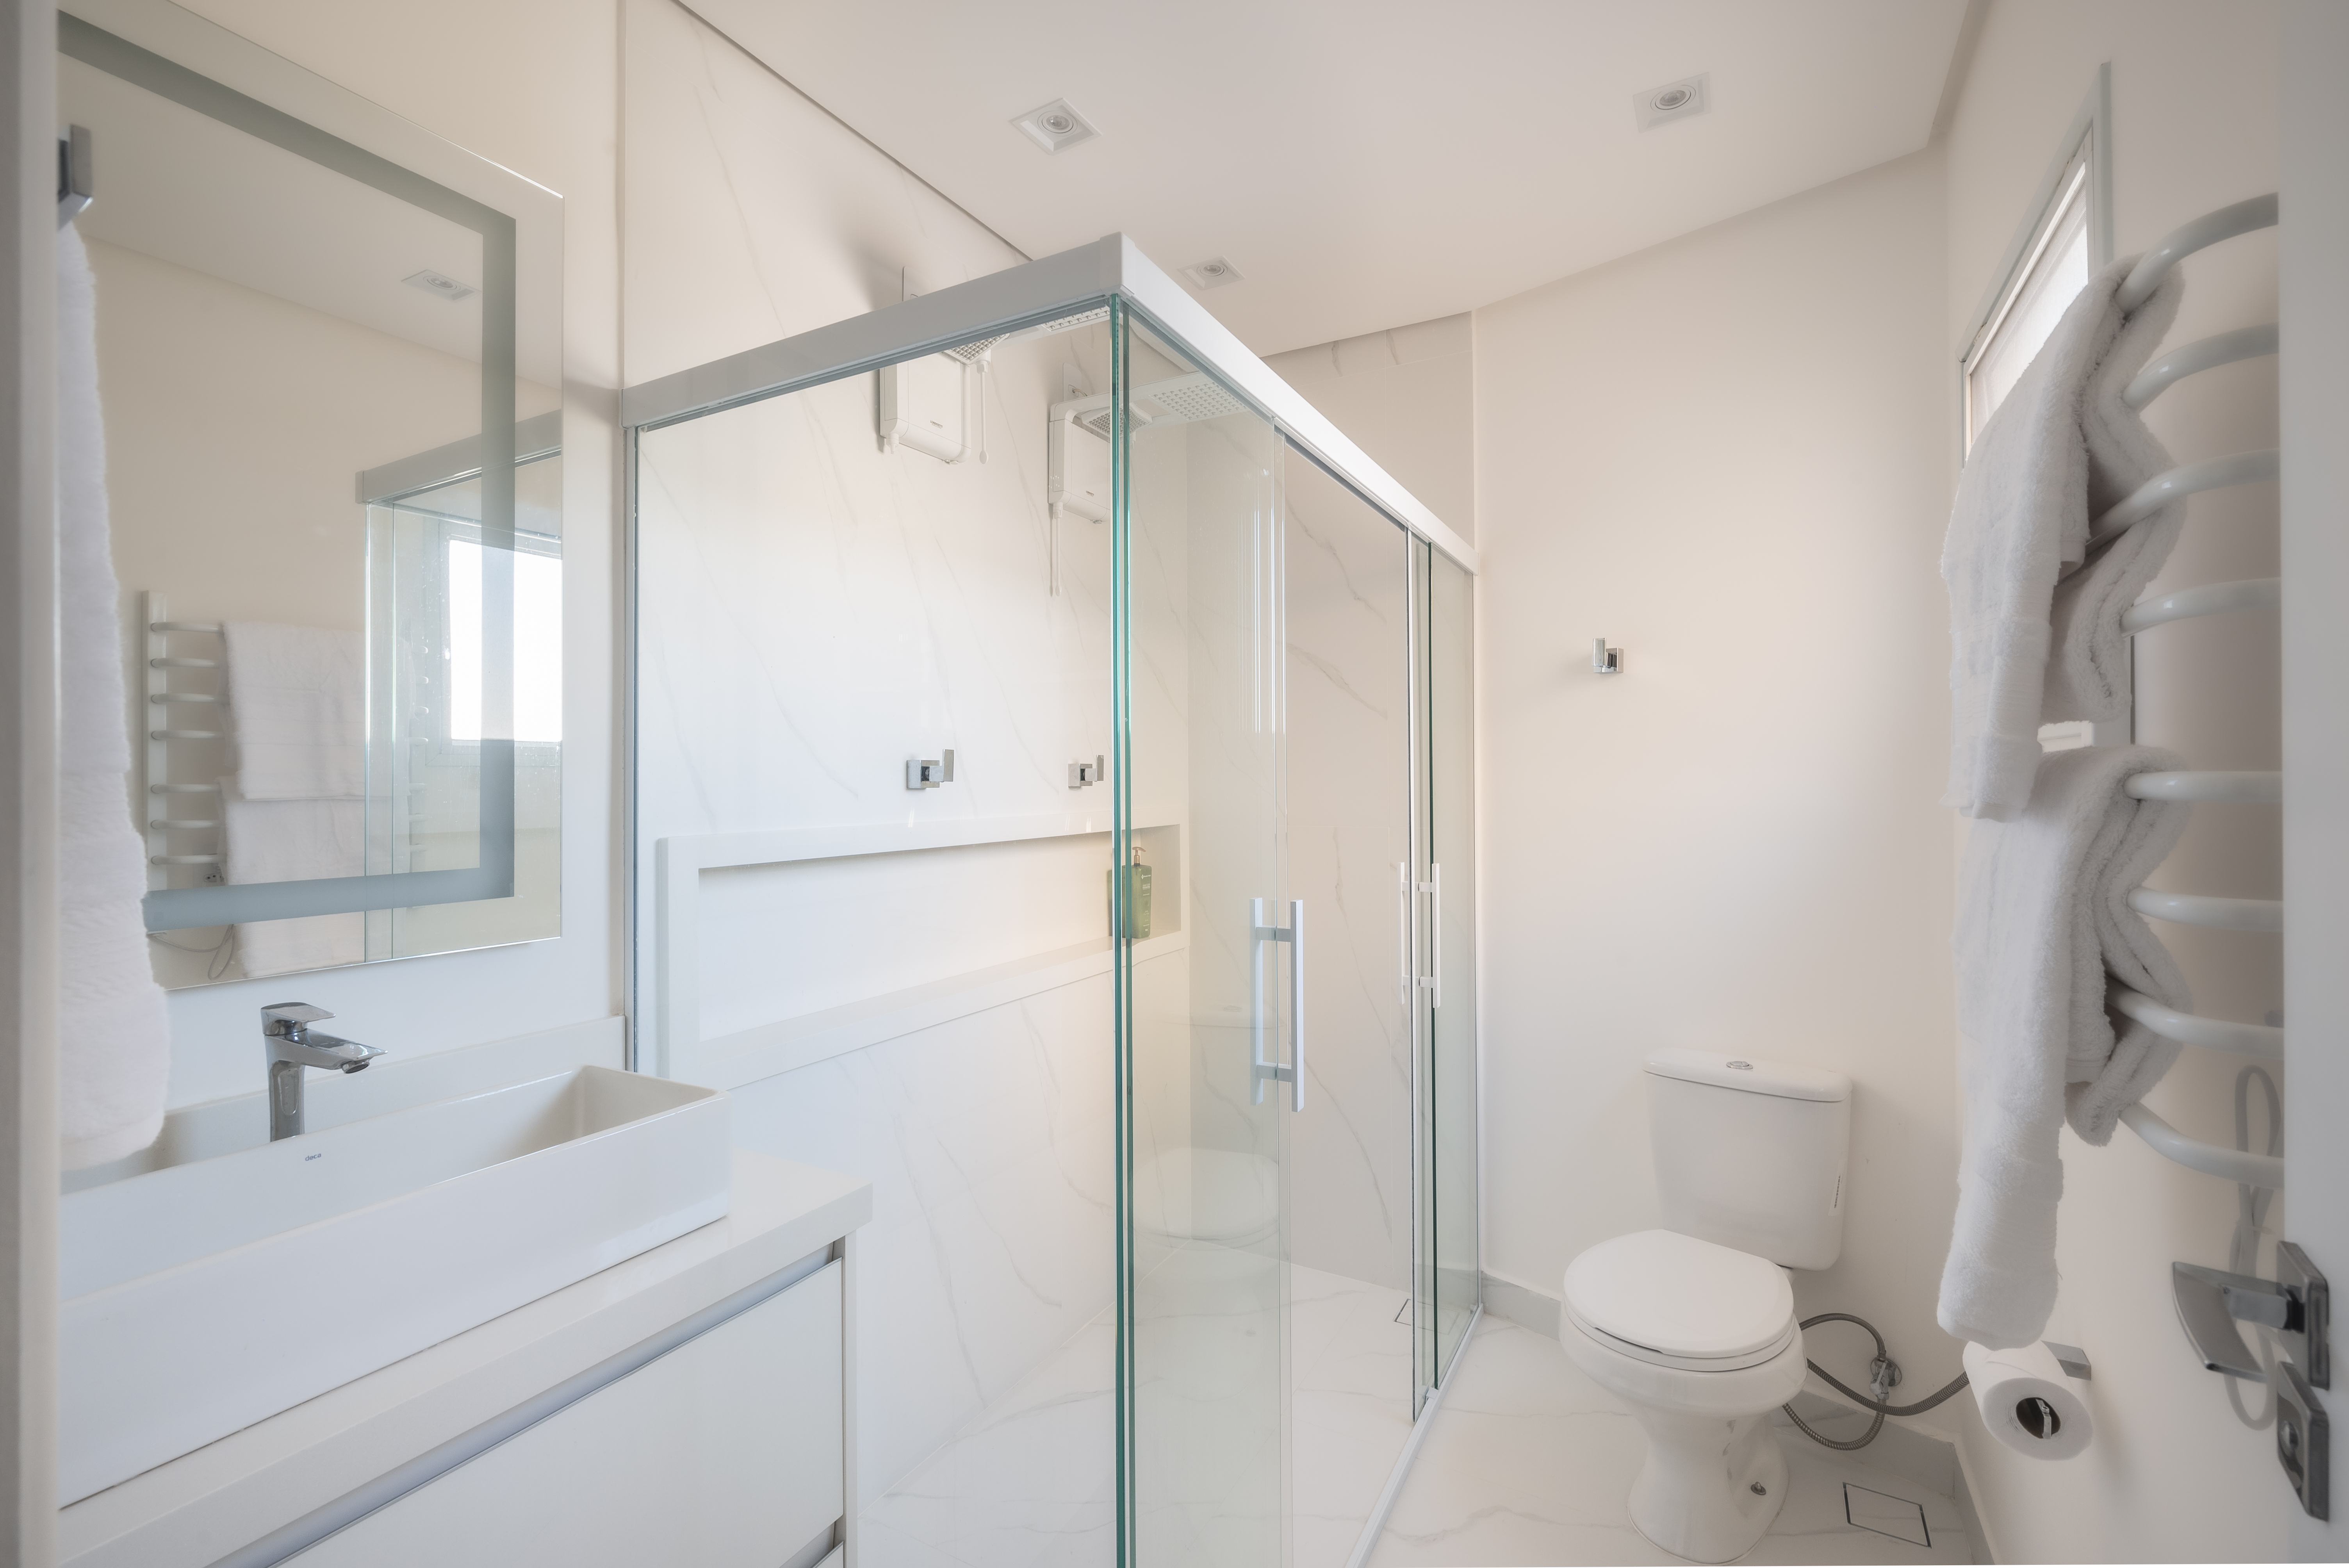 Projeto de PB Arquitetura. Na foto, banheiro branco com armário branco e box de vidro.